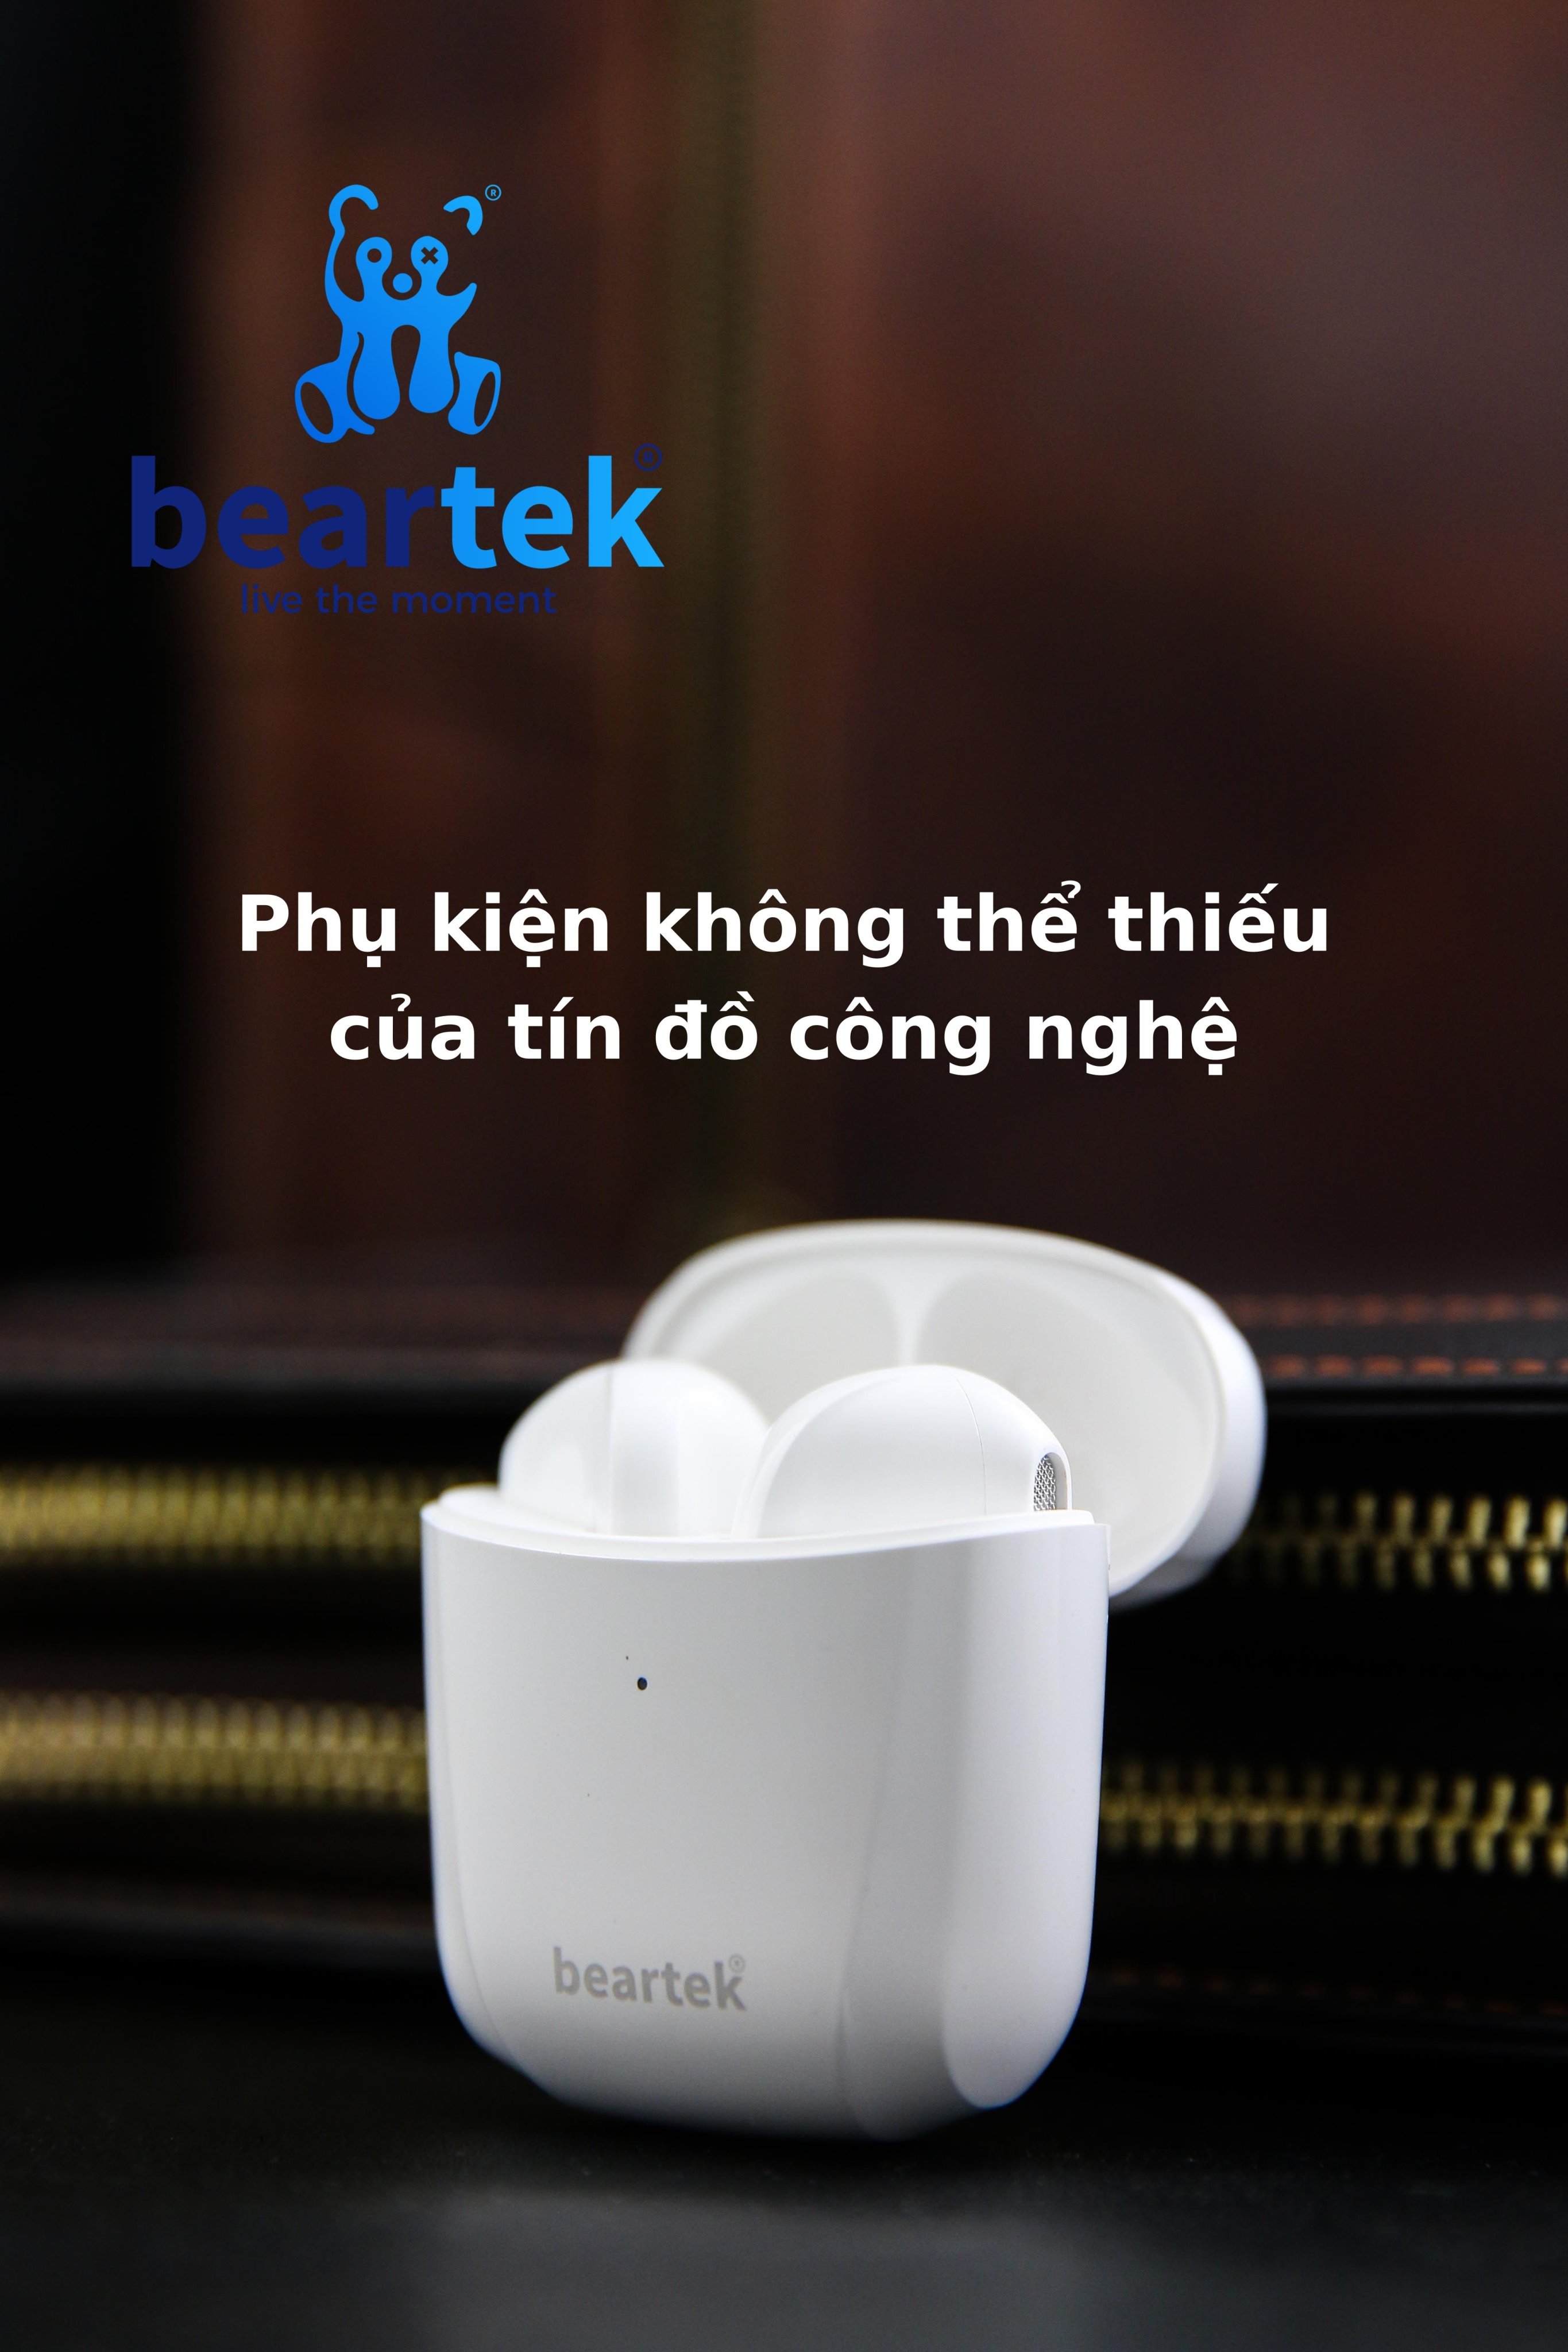 Tai nghe bluetooth không dây Beartek Bearpods B68 True Wireless – Chạm cảm ứng – Thiết kế trẻ trung năng động – Hàng chính hãng